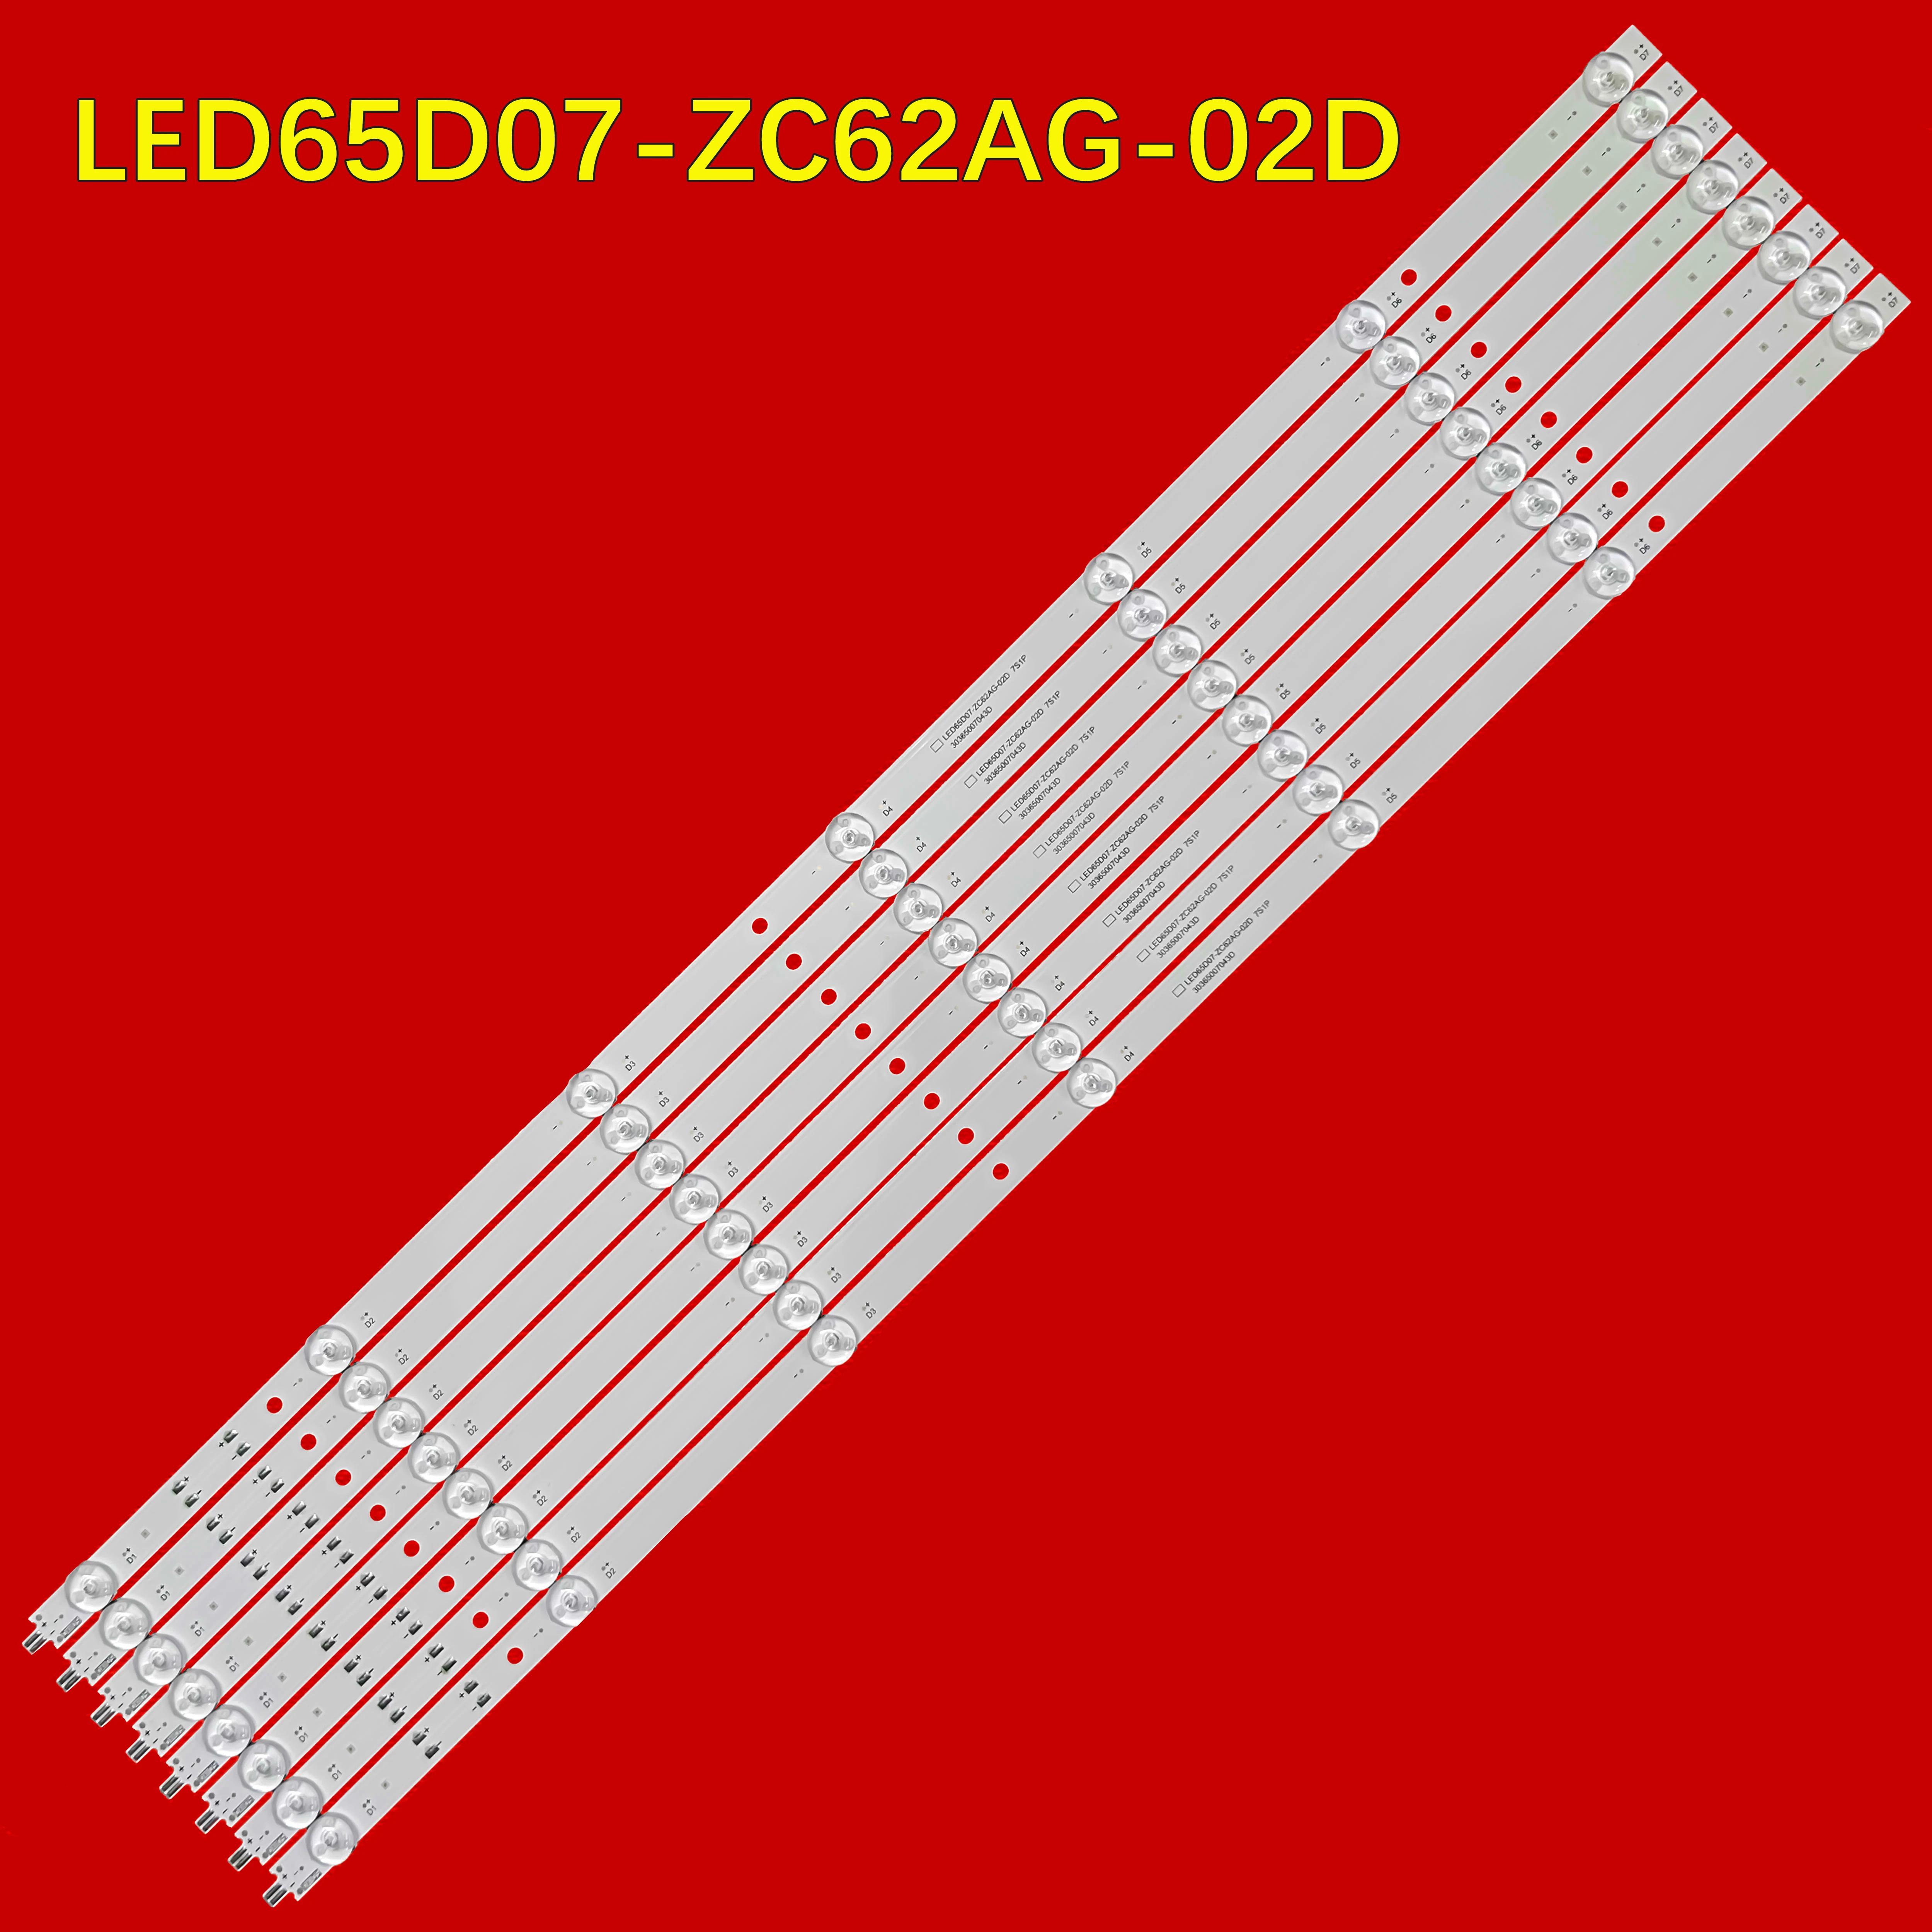 LED TV Ʈ Ʈ, 65R3 LS65Z51Z LU65D31(PRO) 30365007043D LED65D07-ZC62AG-02D